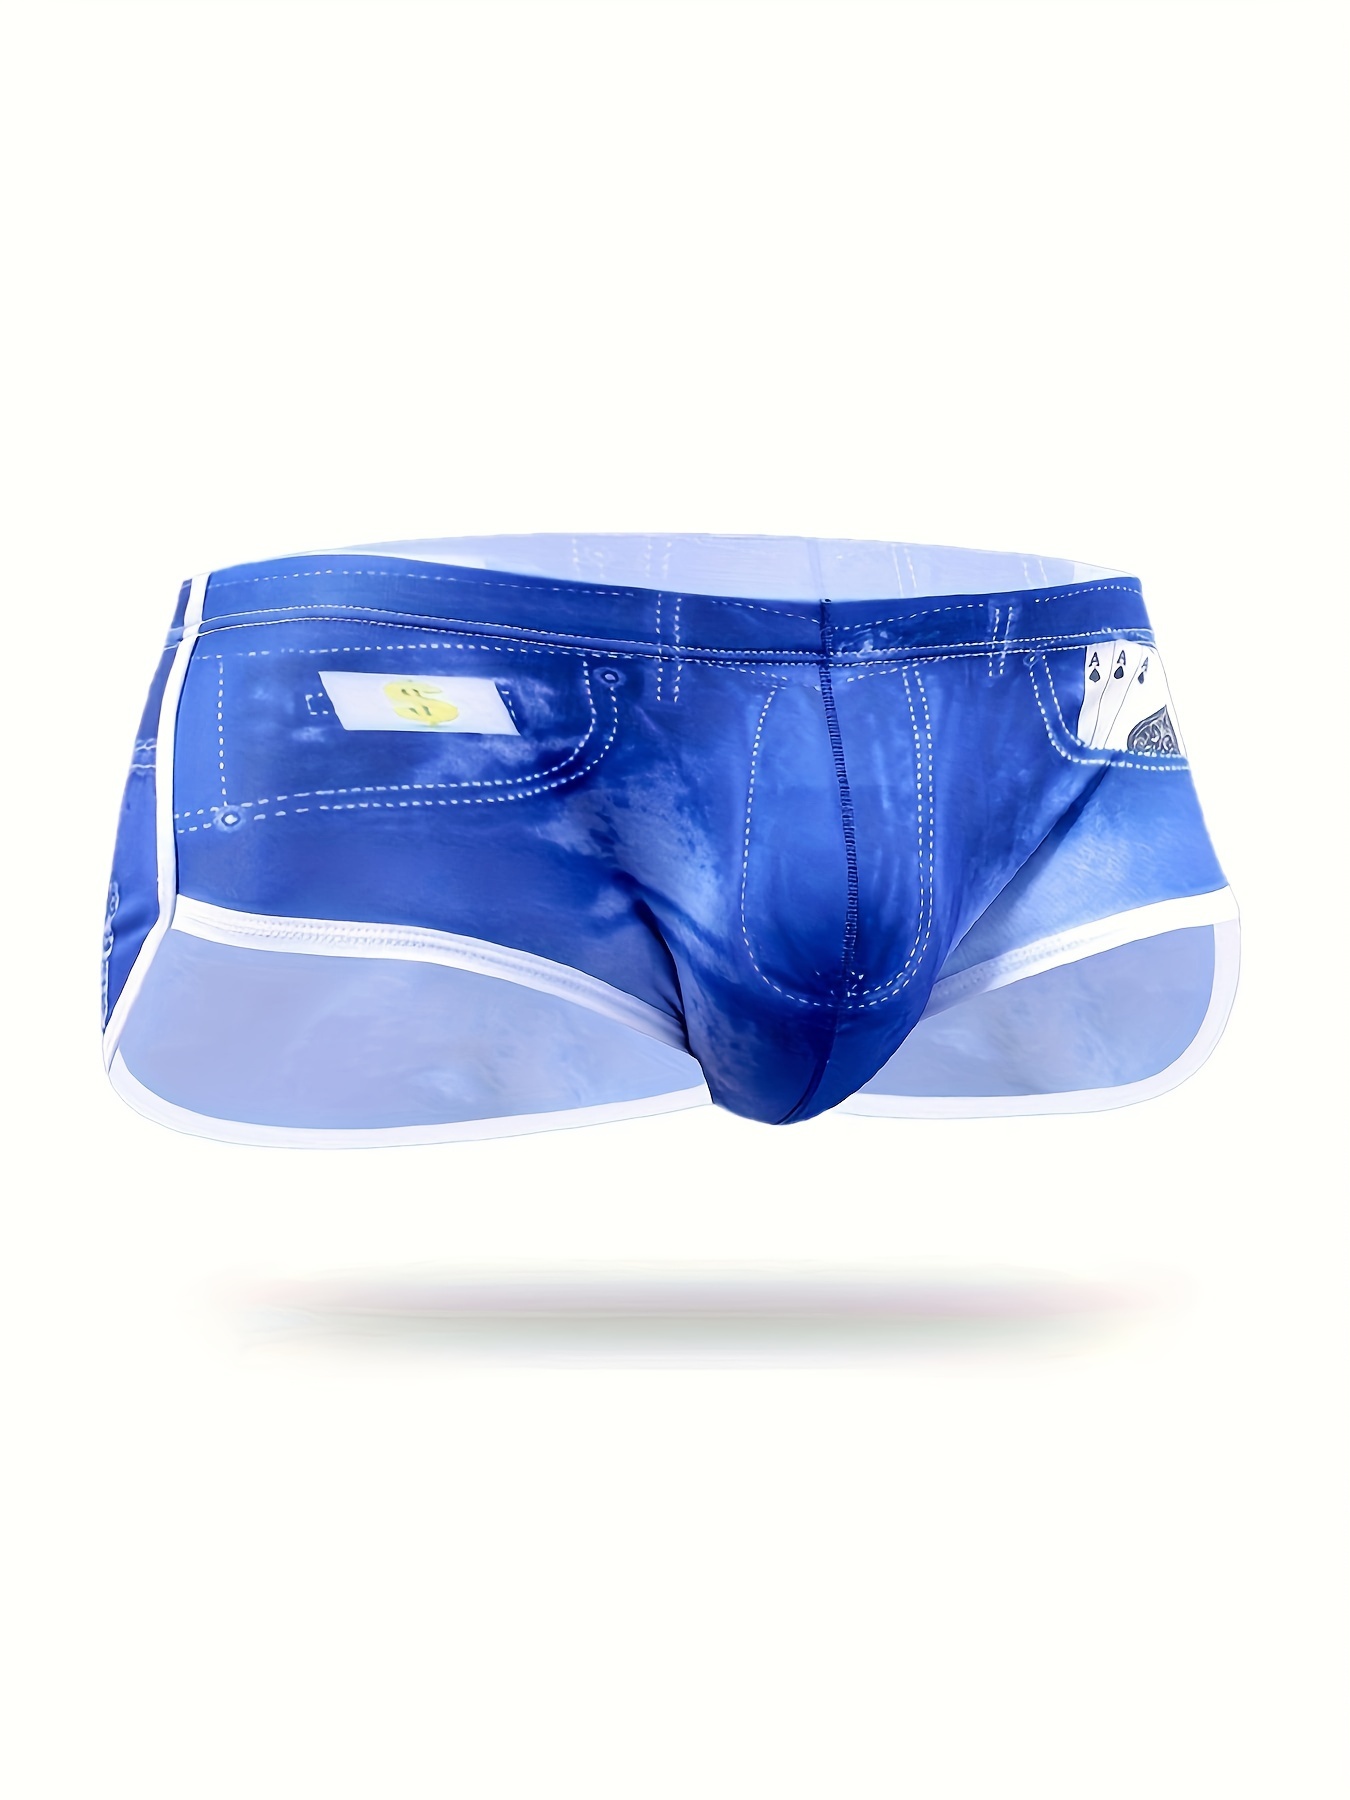 Mens Semi Sheer Mesh Sexy Pajama Pants - Men's Underwear